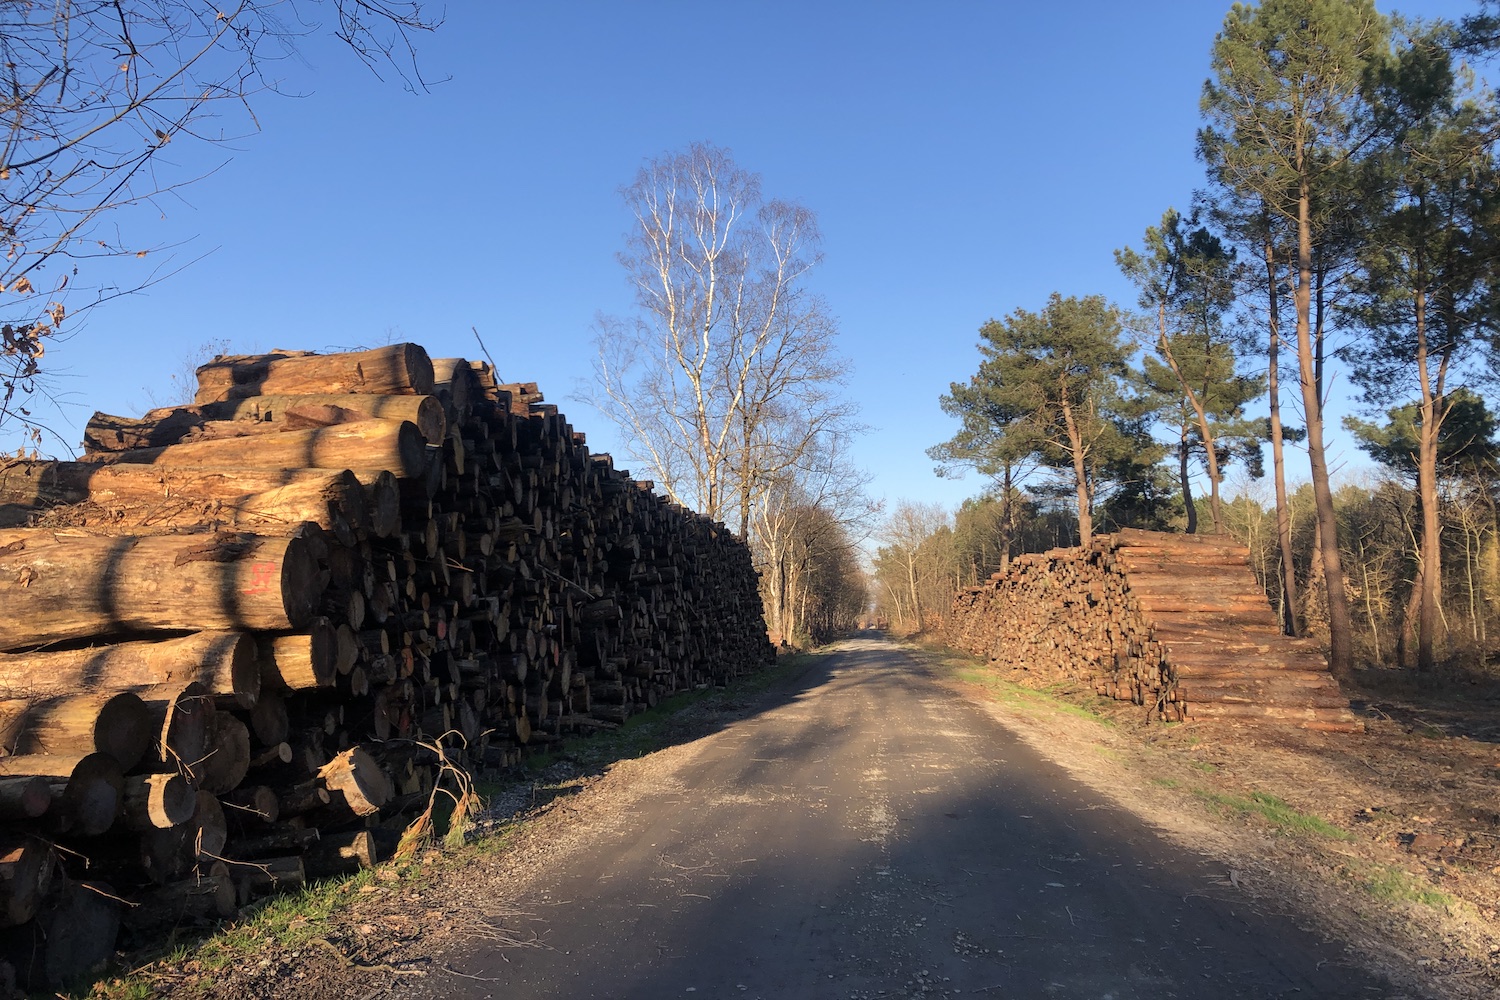 Après l’incendie, des milliers d’arbres ont été rapidement tronçonnés pour éviter qu’ils dépérissent et deviennent inexploitables pour l’industrie du bois. Ils seront ensuite transformés en palettes, panneaux de bois aggloméré, etc. © Globe Reporters